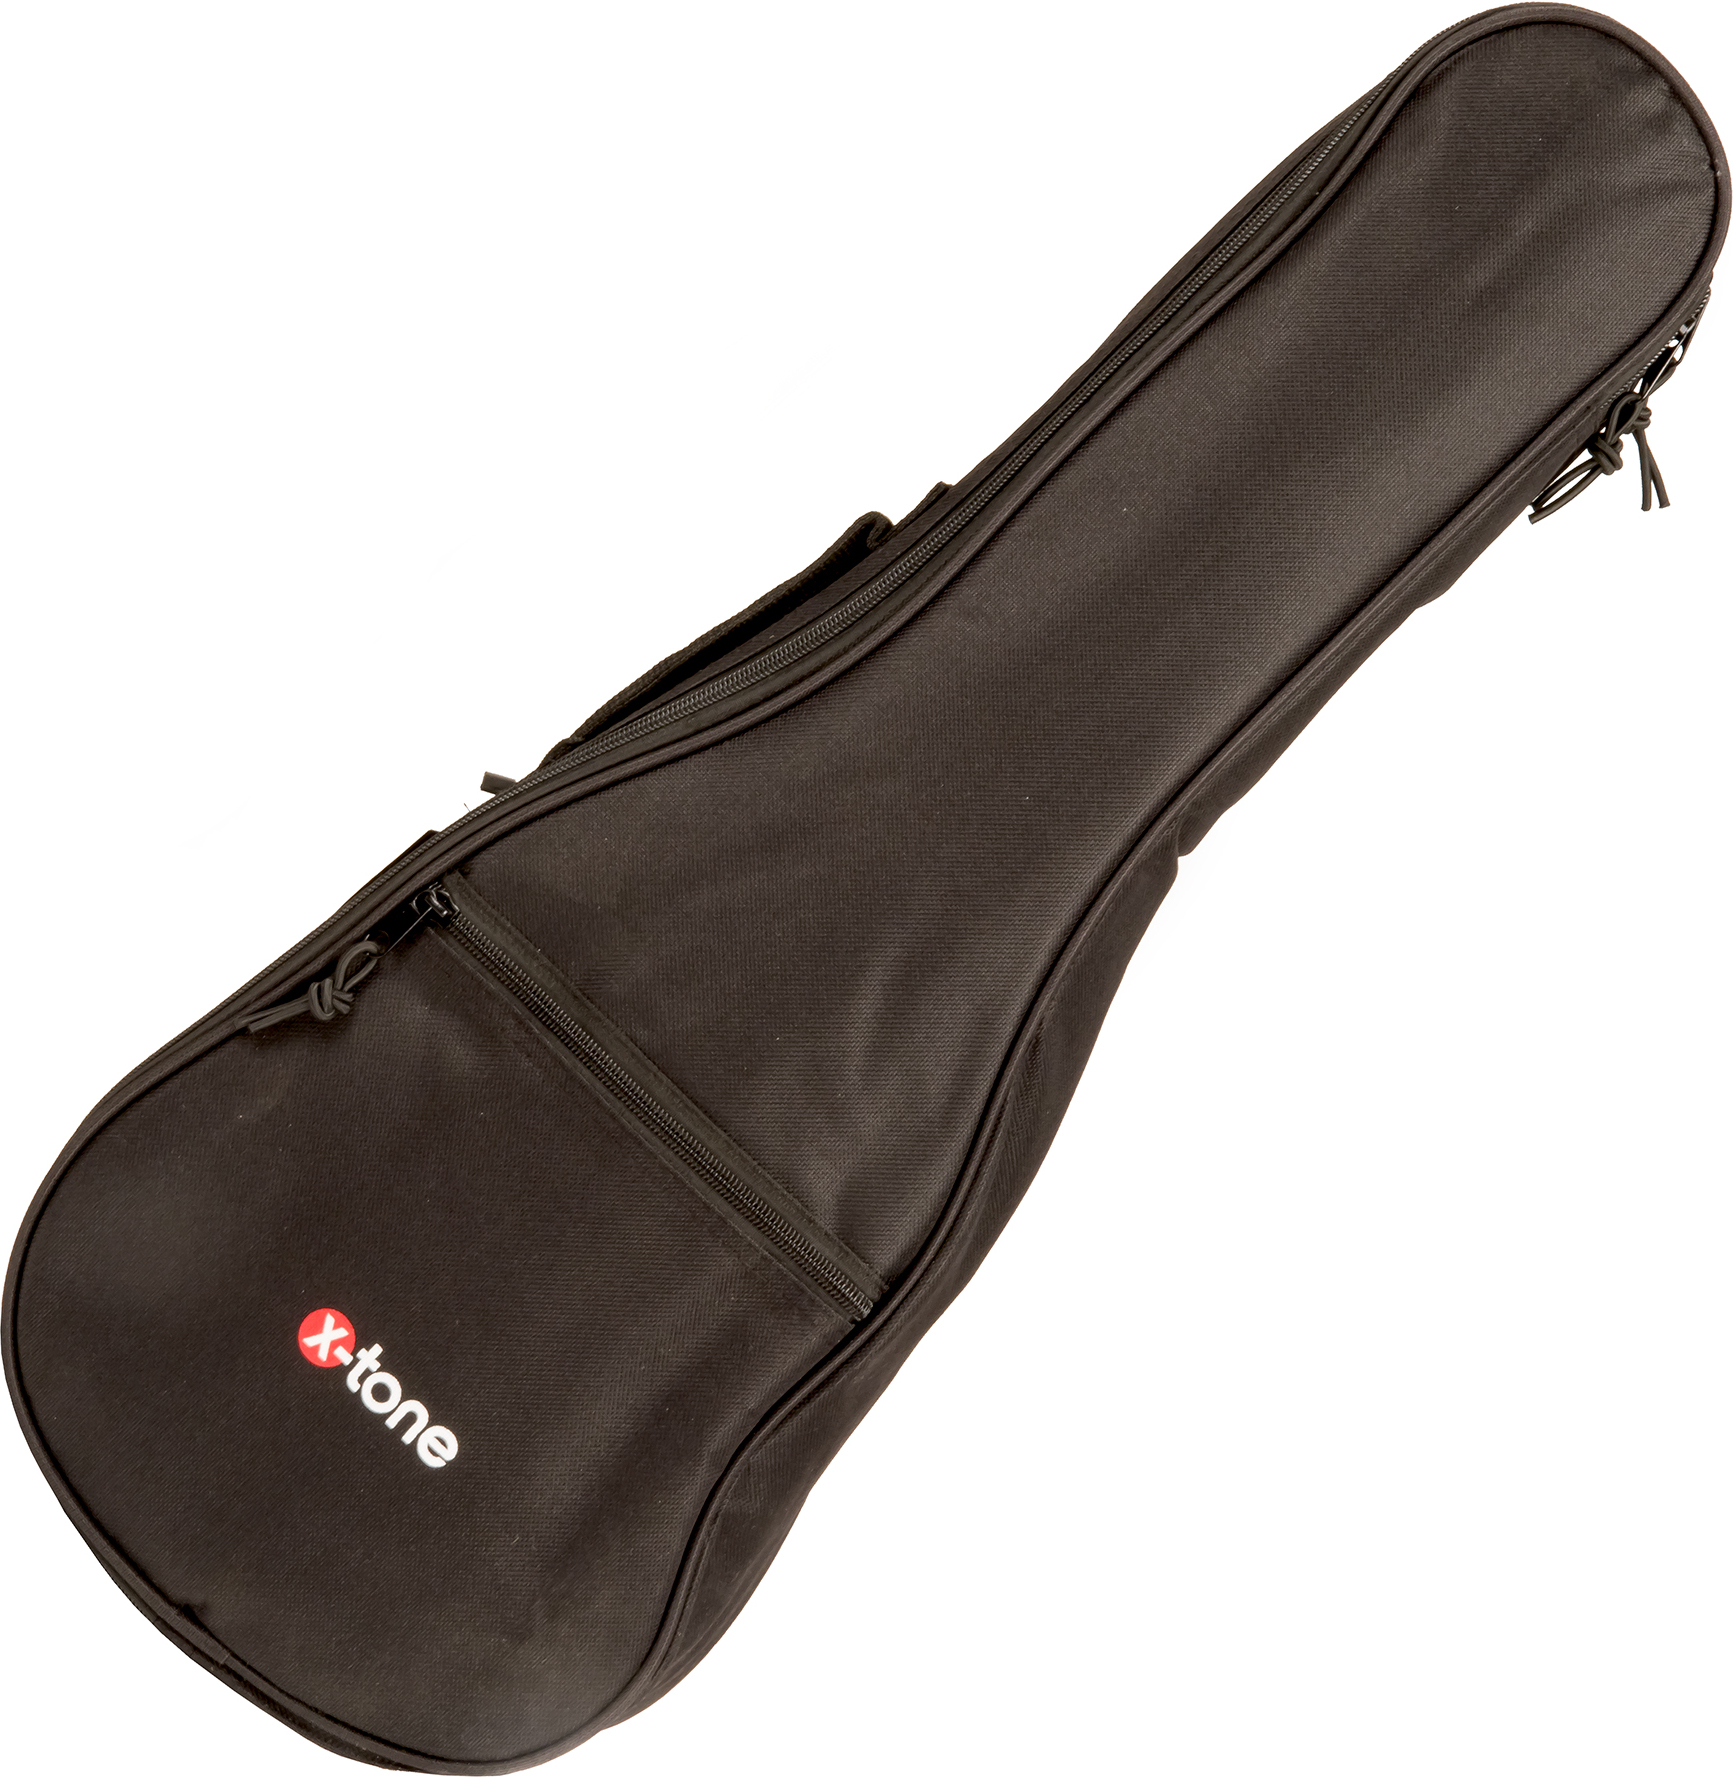 X-tone 2020 Ukulele Soprano Bag 3mm - Ukulele gig bag - Main picture